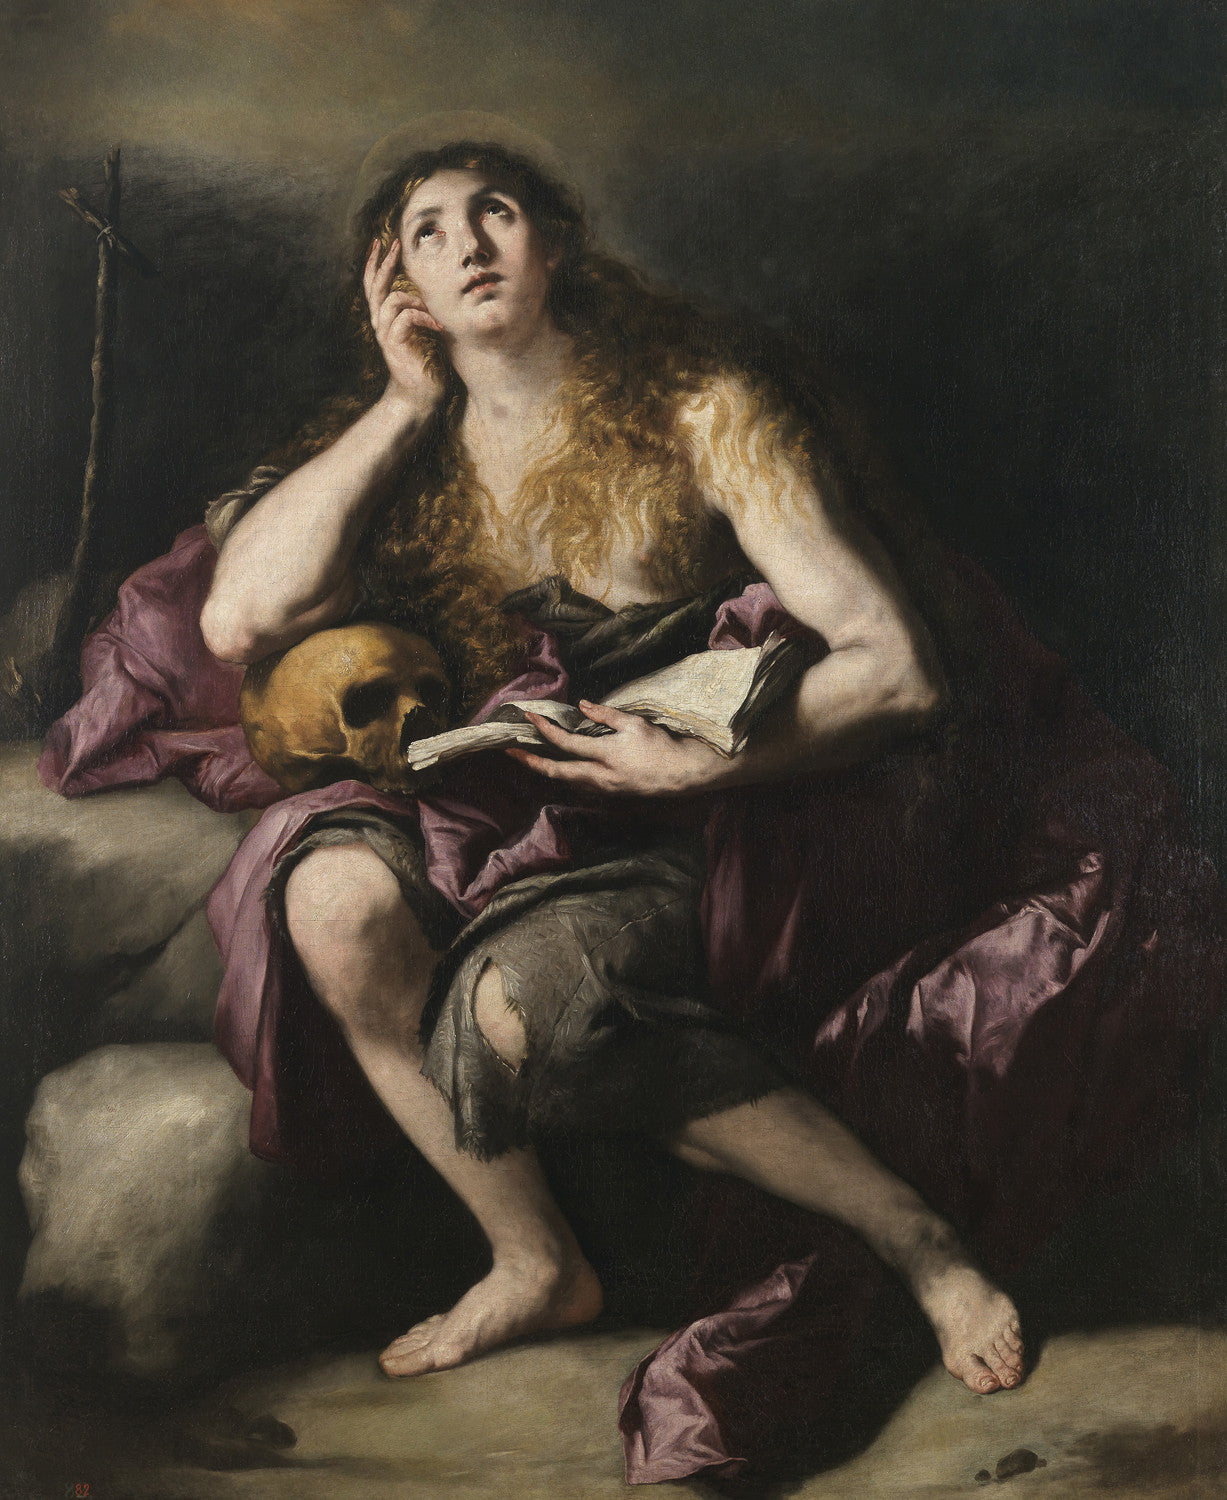 Luca Giordano - Penitent Mary Magdalene